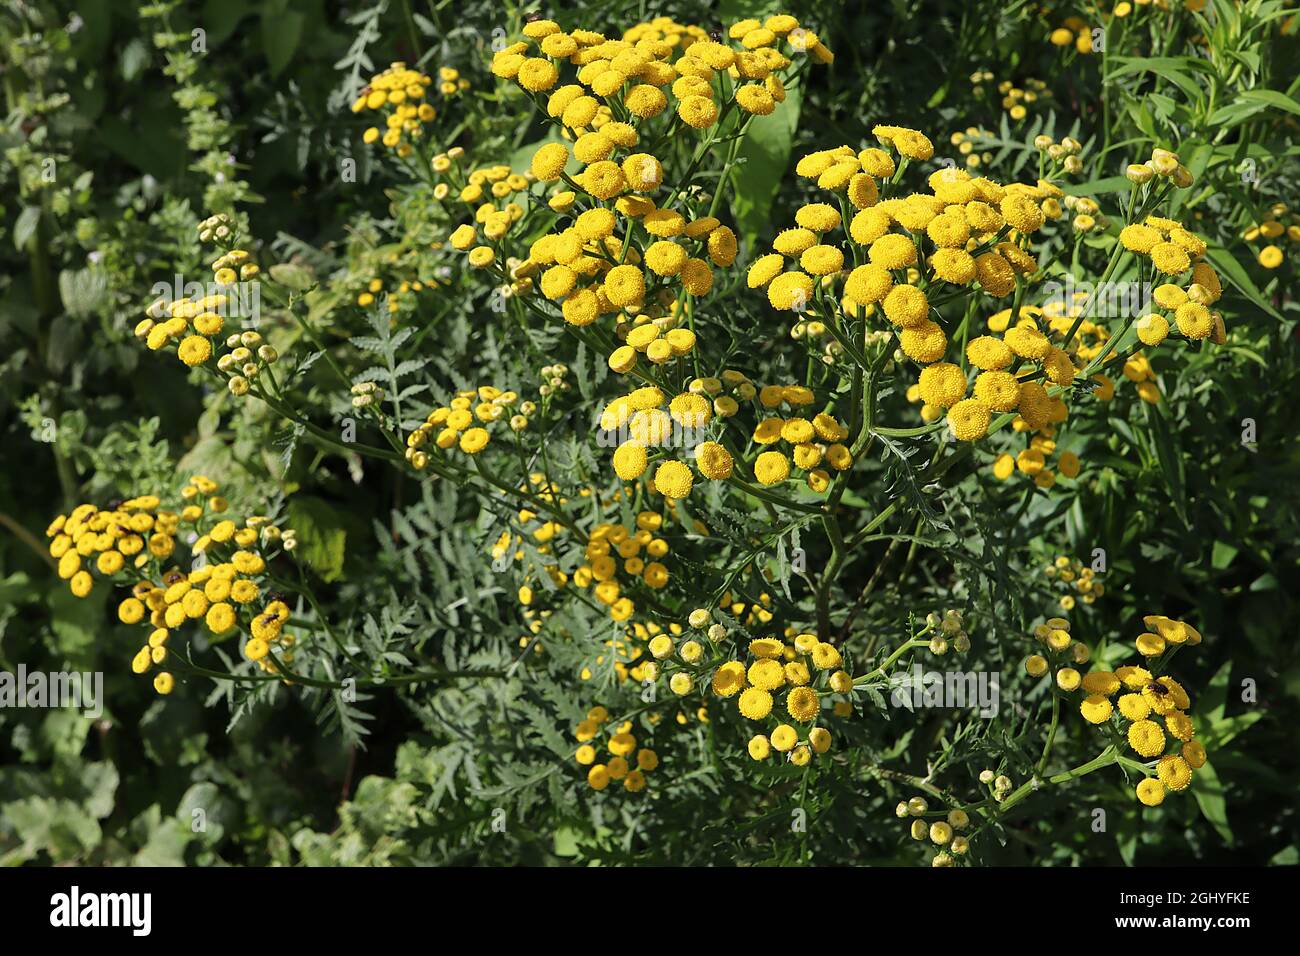 Tanaceum boreale / vulgare commune tansy – grappes bombées de fleurs jaunes bouton-comme sur les tiges hautes et les feuilles de fougères vert foncé, août, Angleterre, Royaume-Uni Banque D'Images